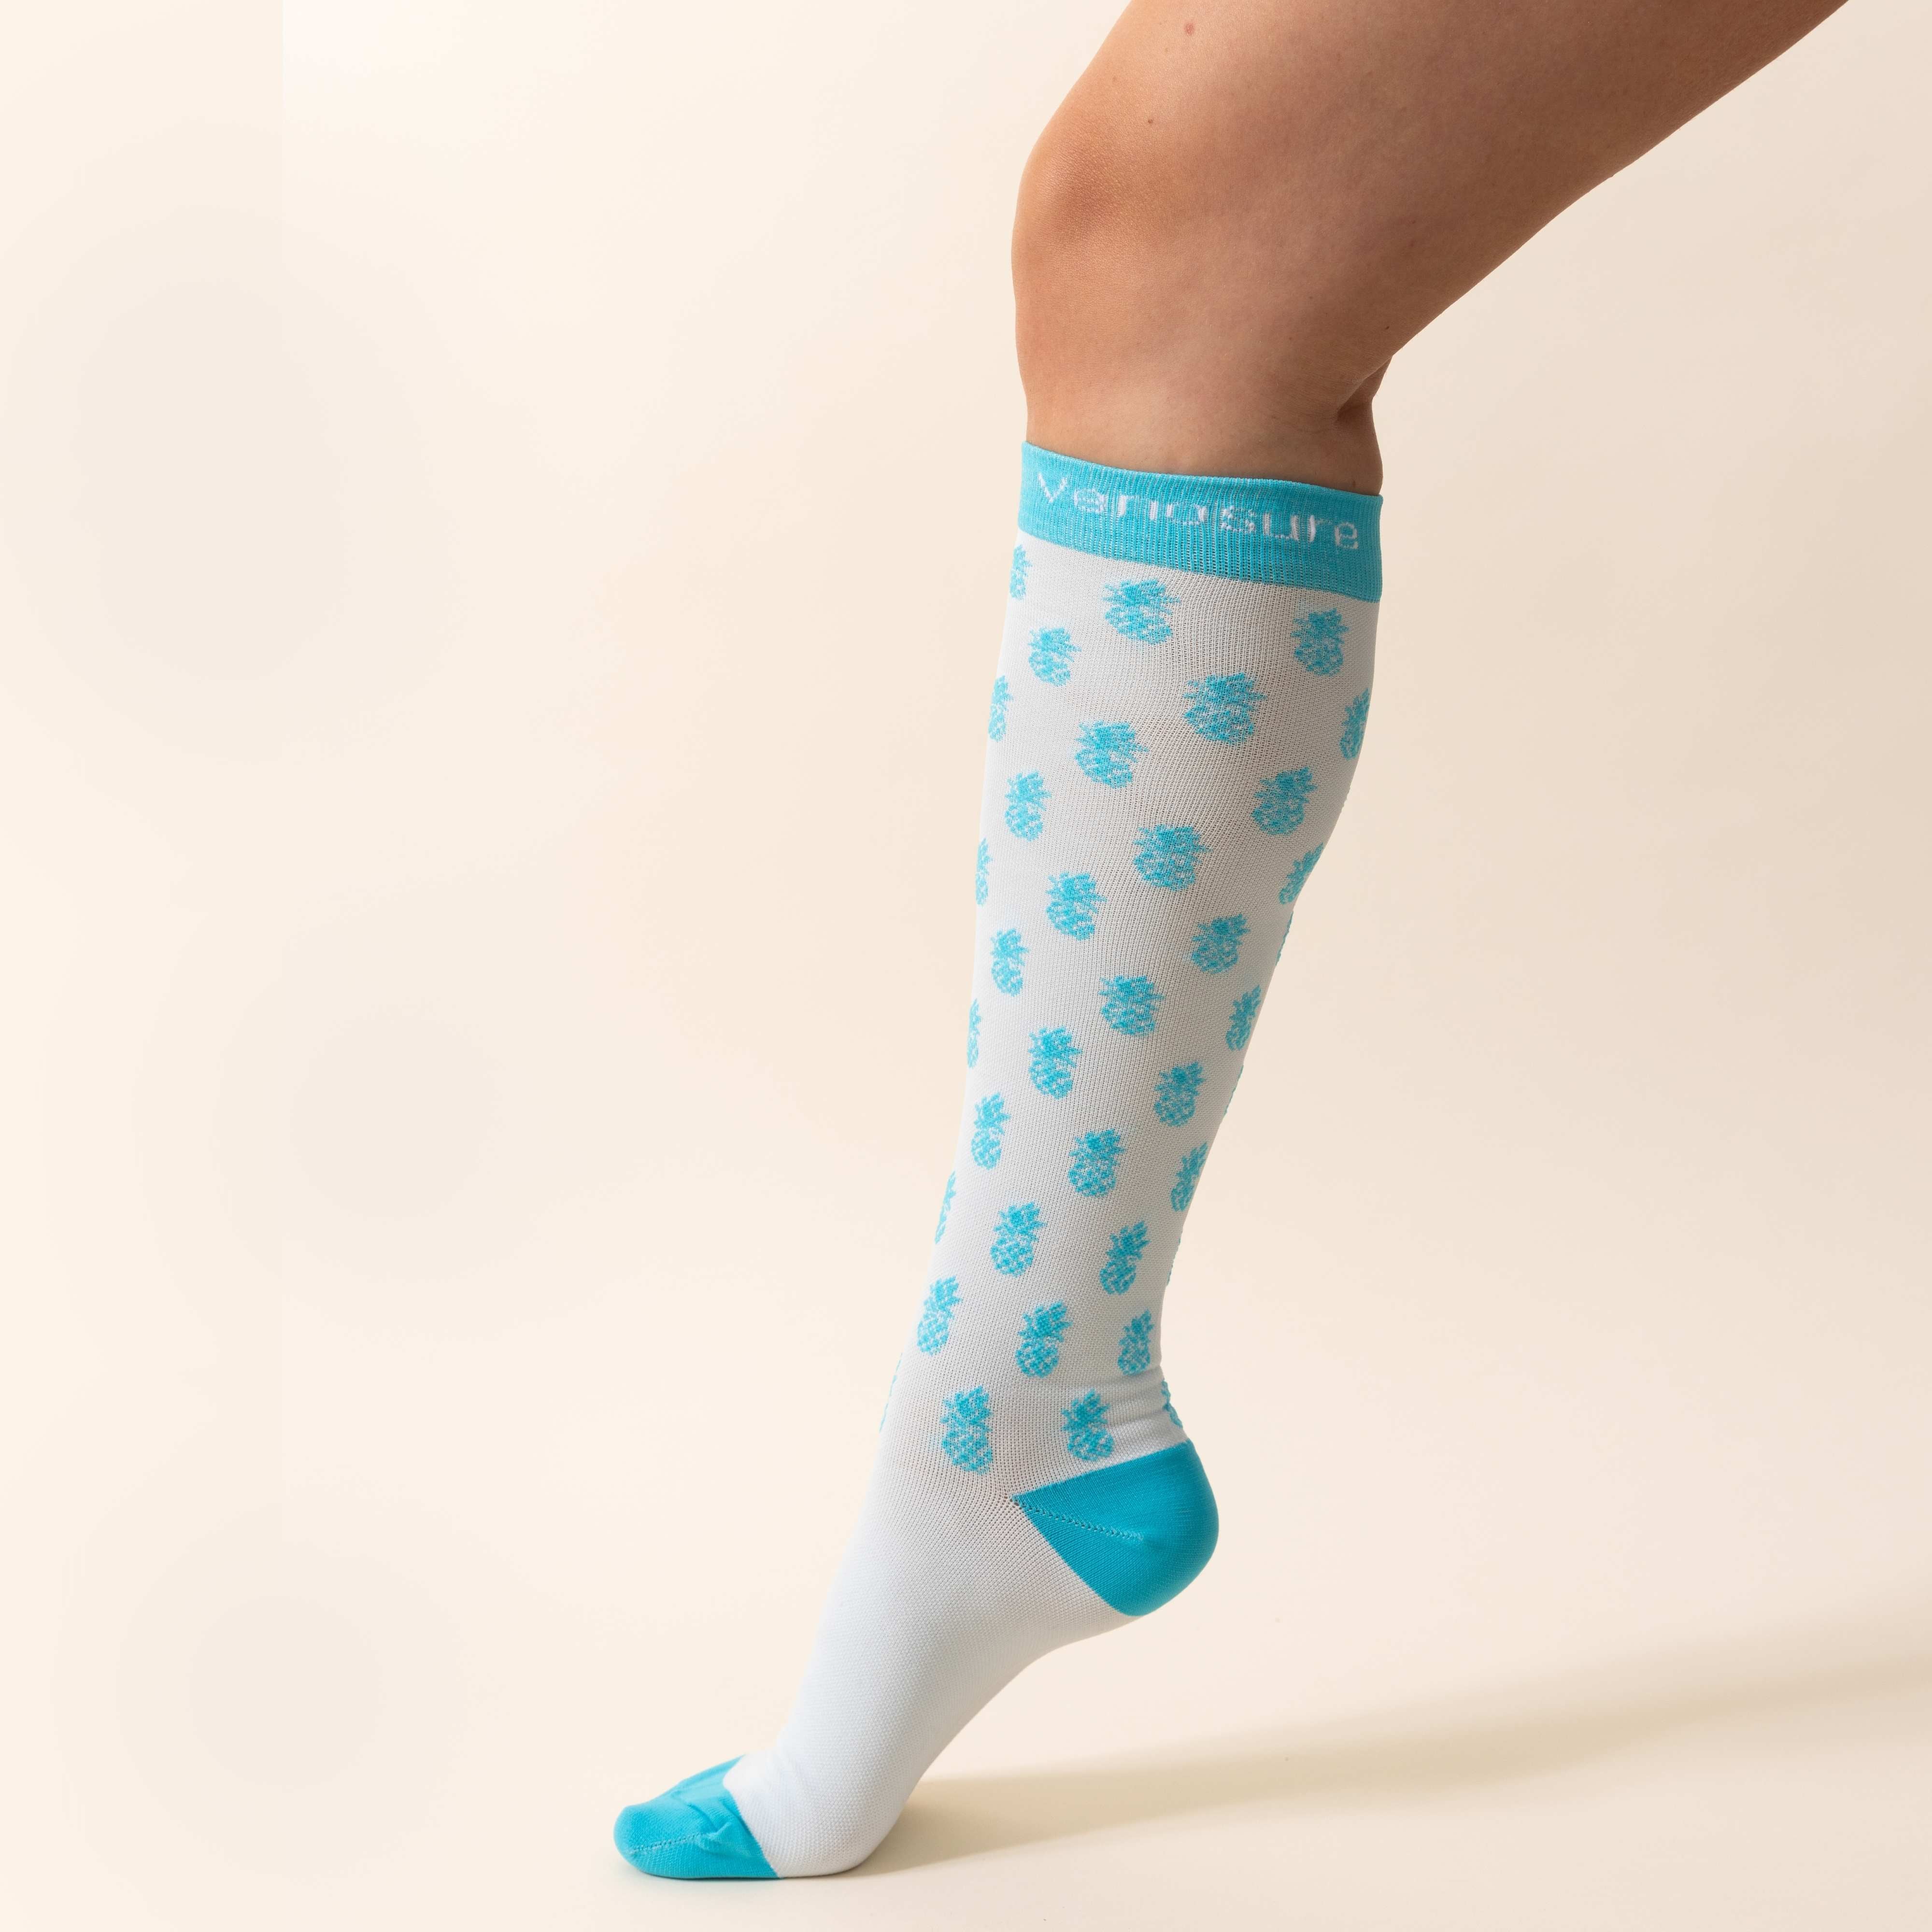 VenoSure Compression Socks – Skintensive Skincare